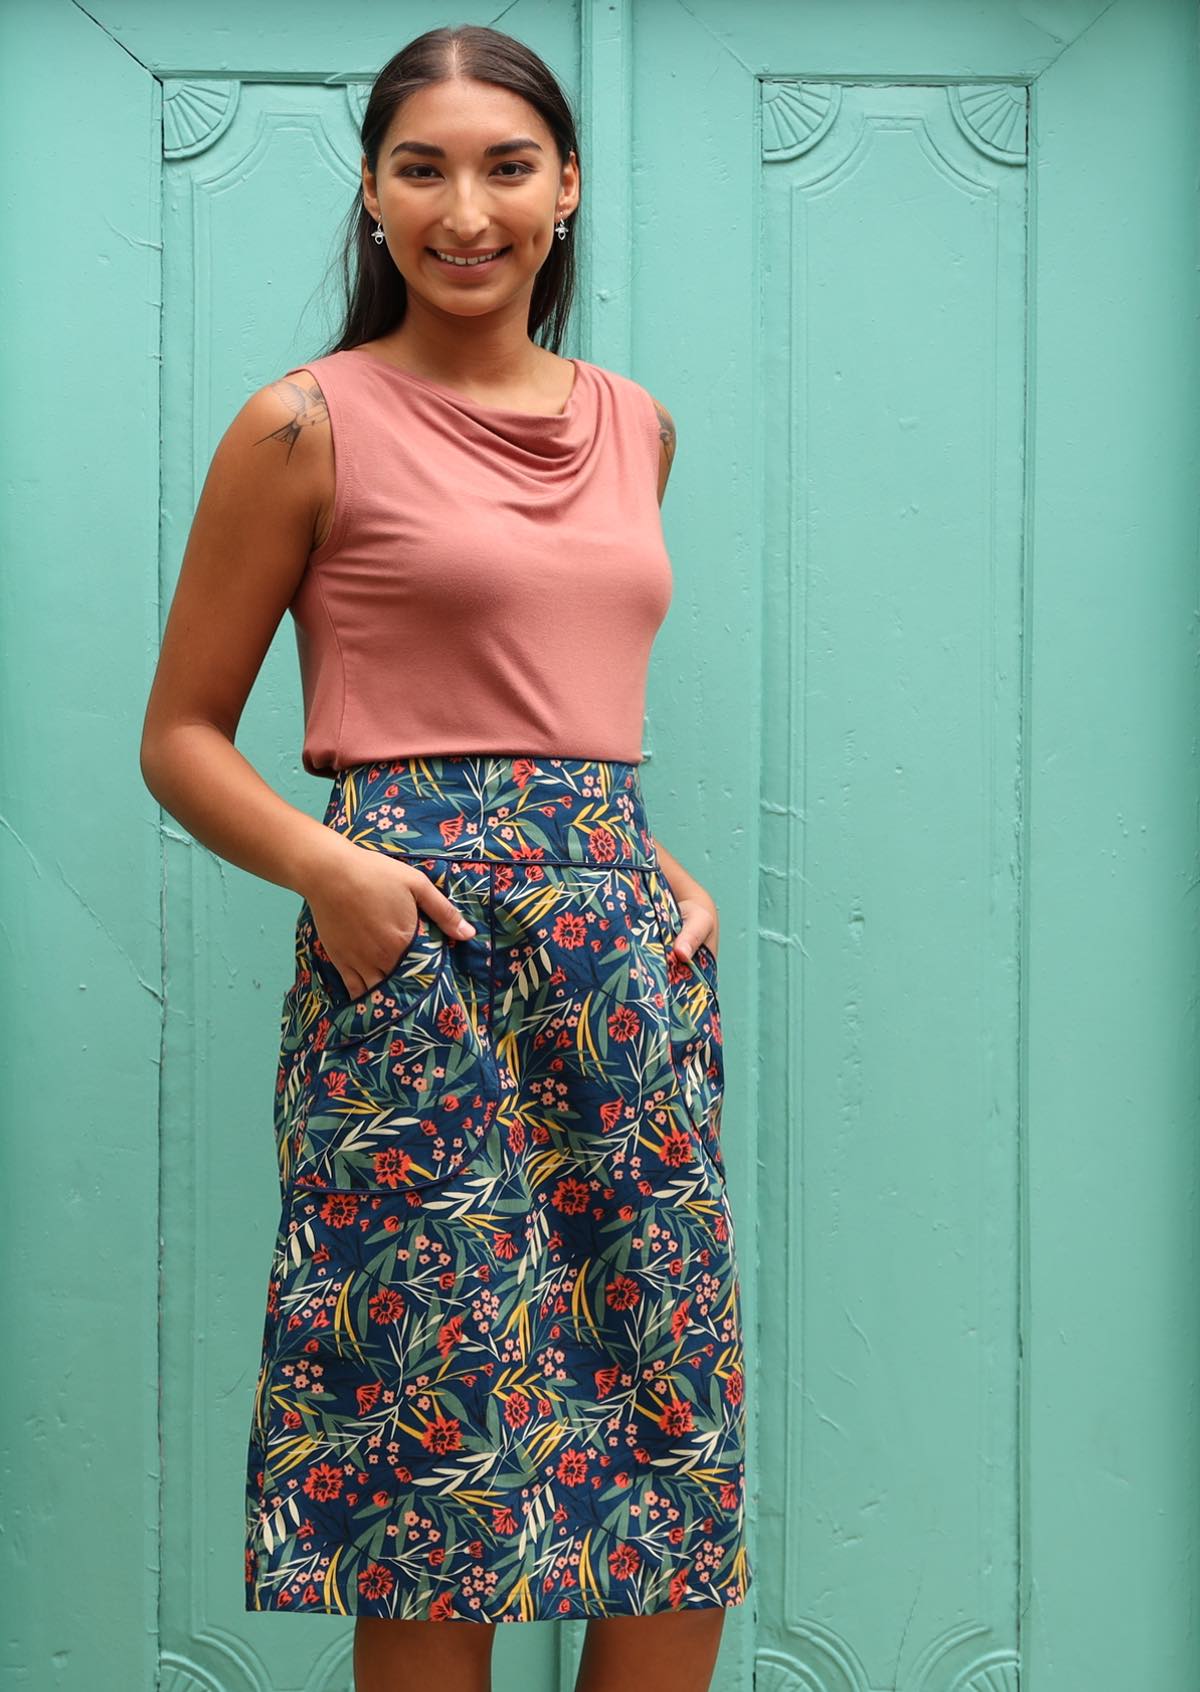 Model wear 100% cotton skirt with a hidden side zip. 